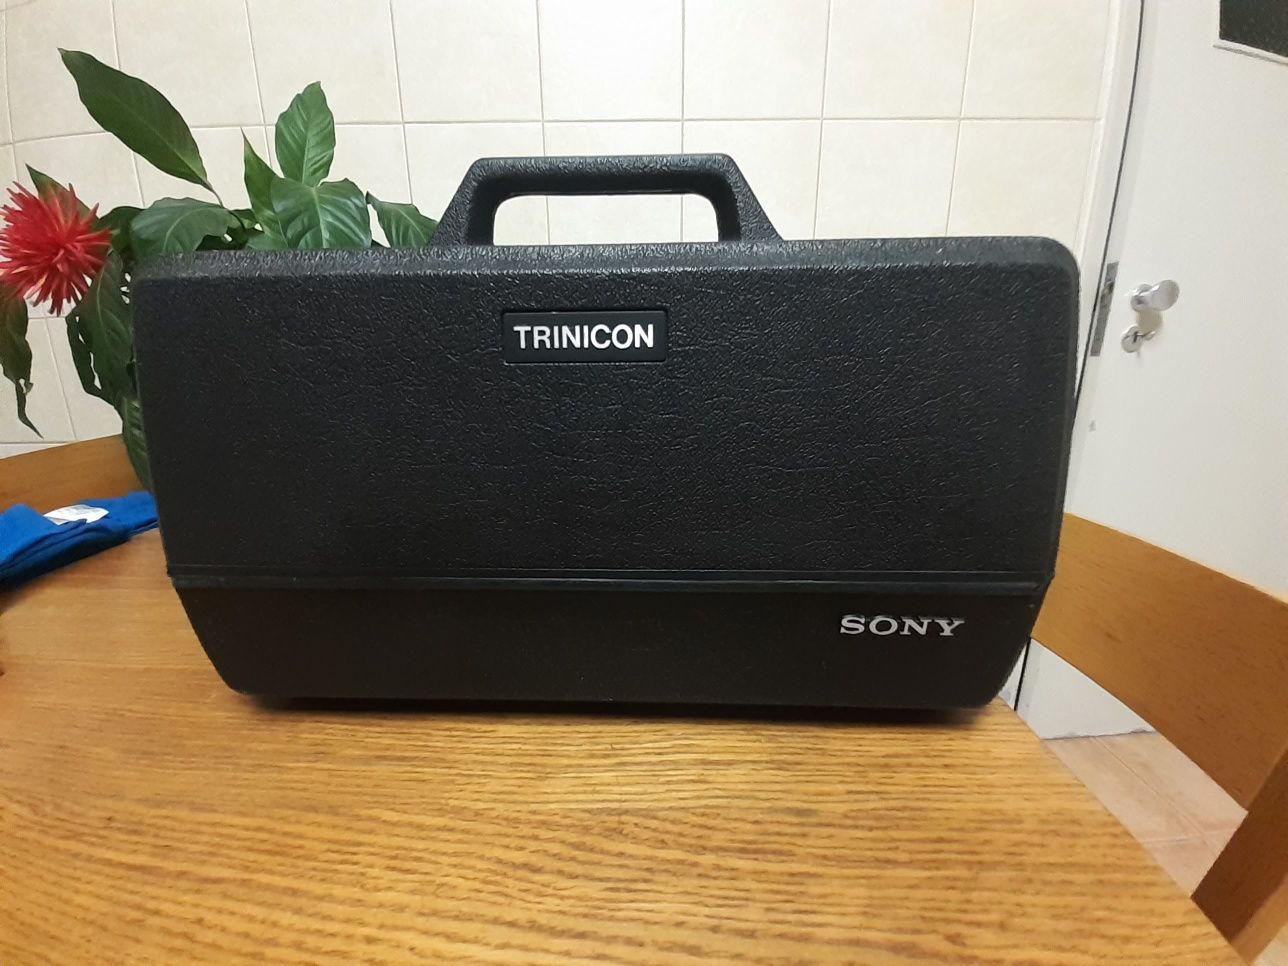 Camera Sony Trinicon